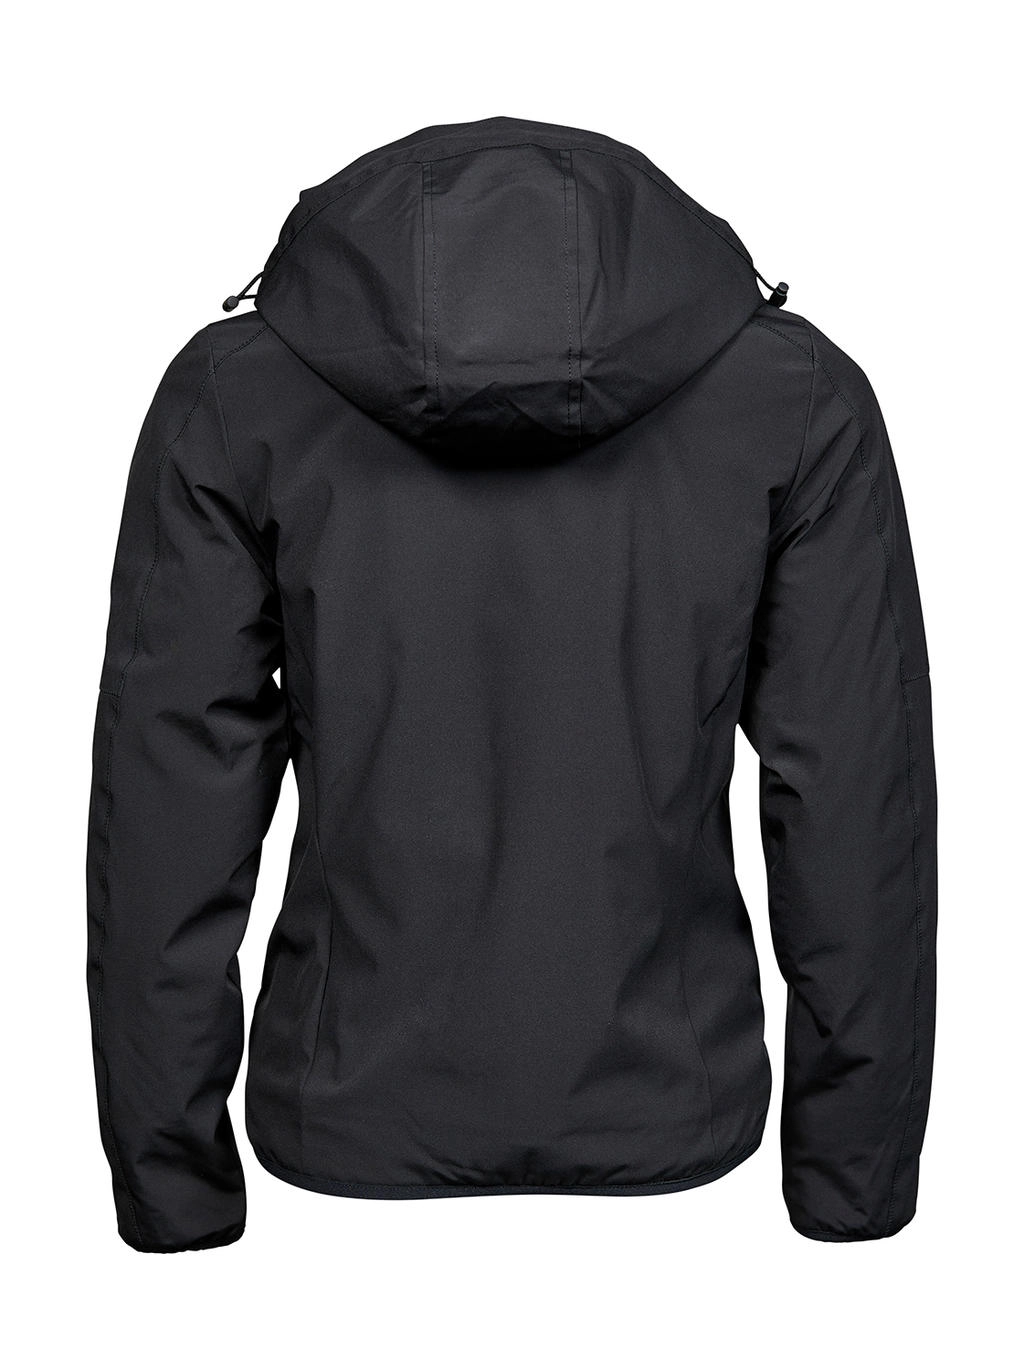 Ladies` Urban Adventure Jacket zum Besticken und Bedrucken in der Farbe Black mit Ihren Logo, Schriftzug oder Motiv.